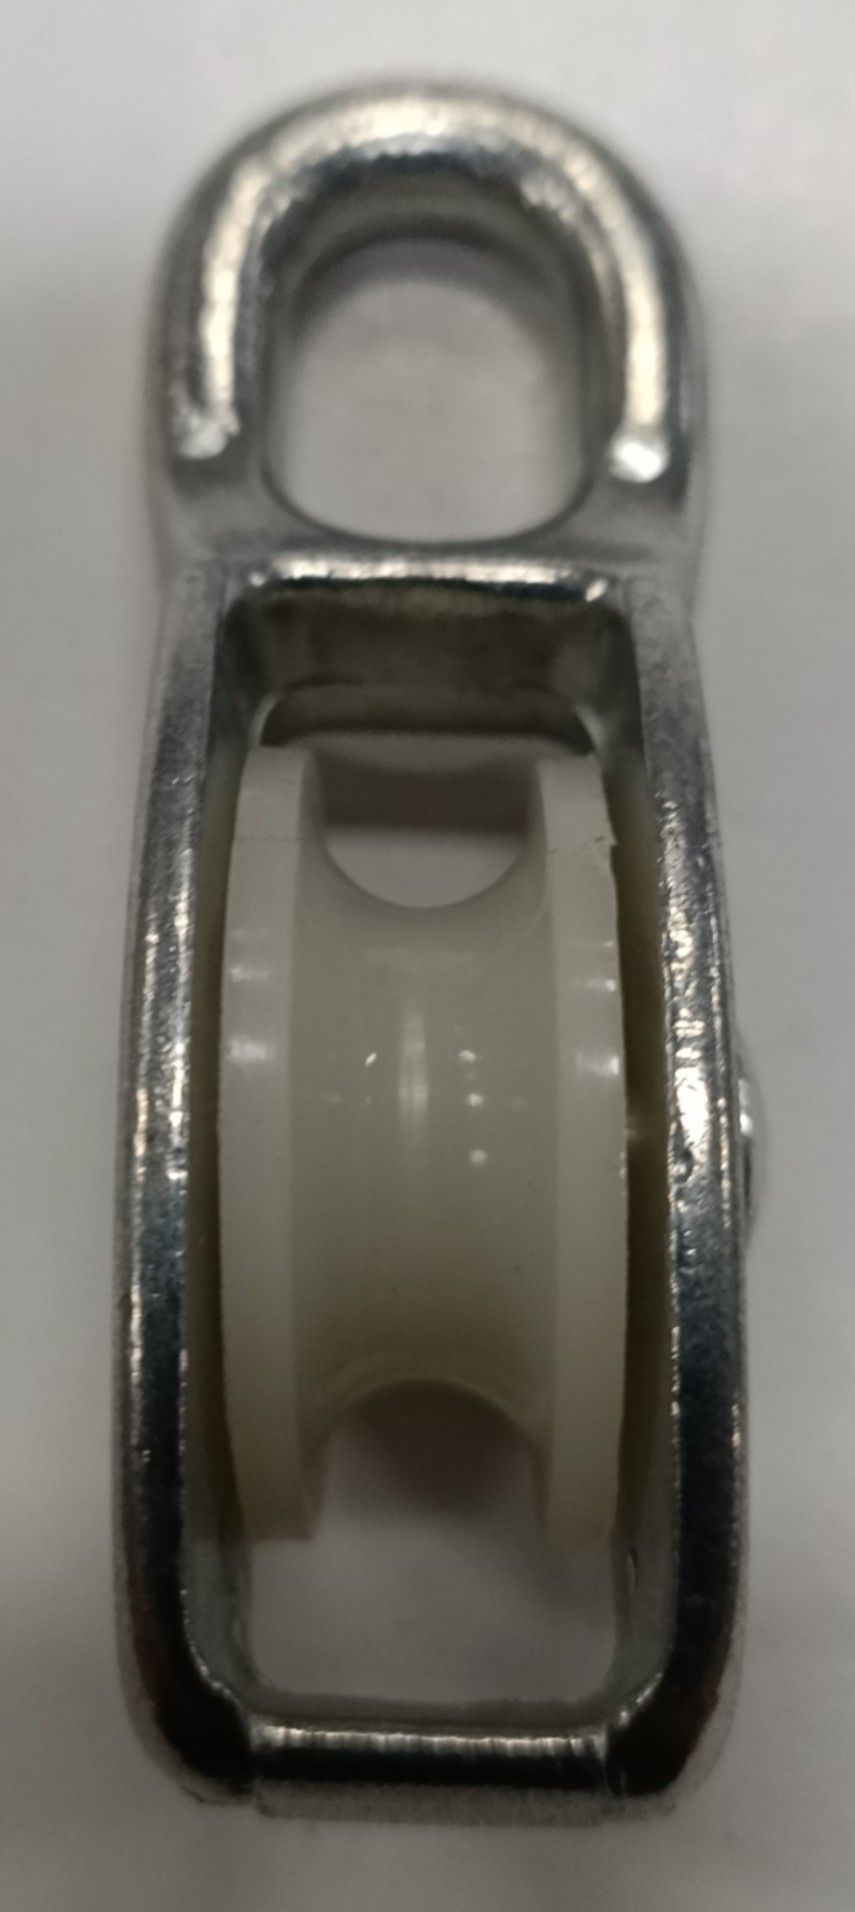 Carrucola nylon d. 30 mm con supporto ad occhiello